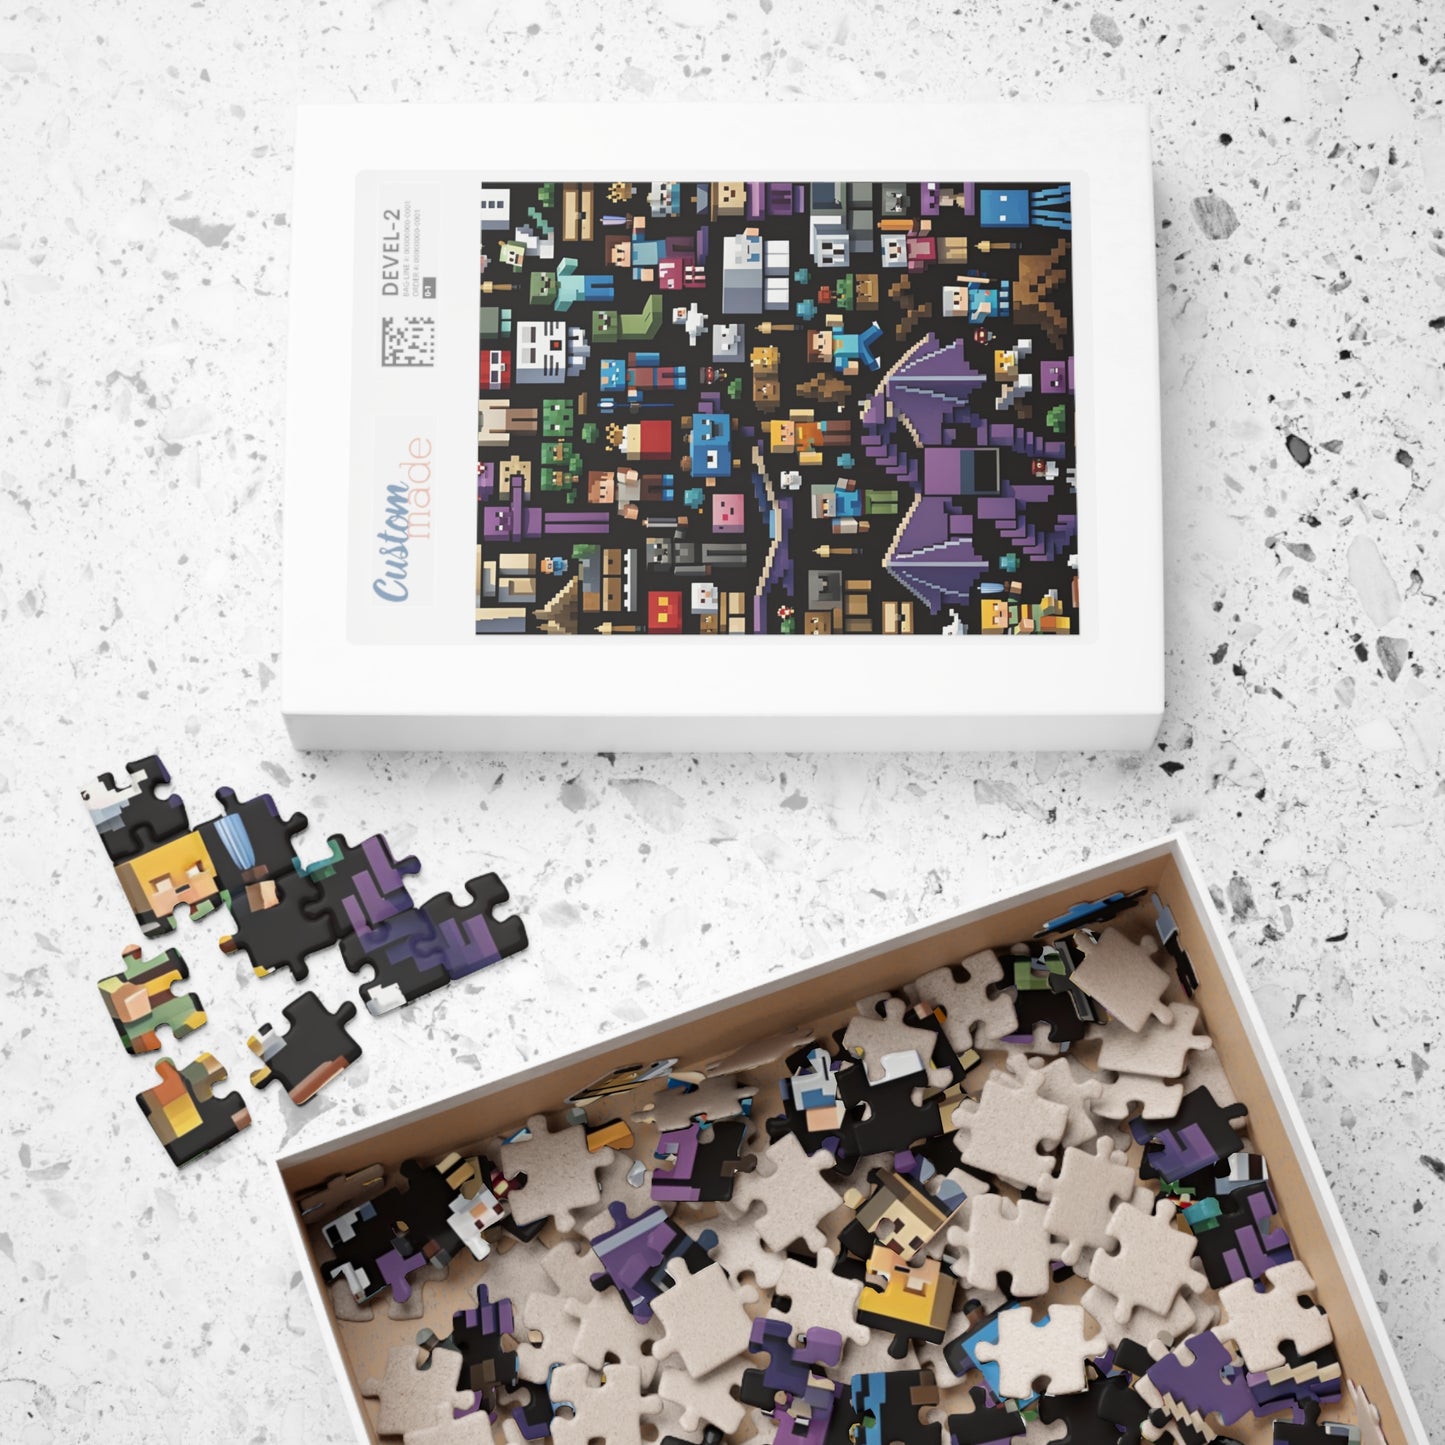 Minecraft Collage Puzzle (110, 252, 500, 1014-piece)